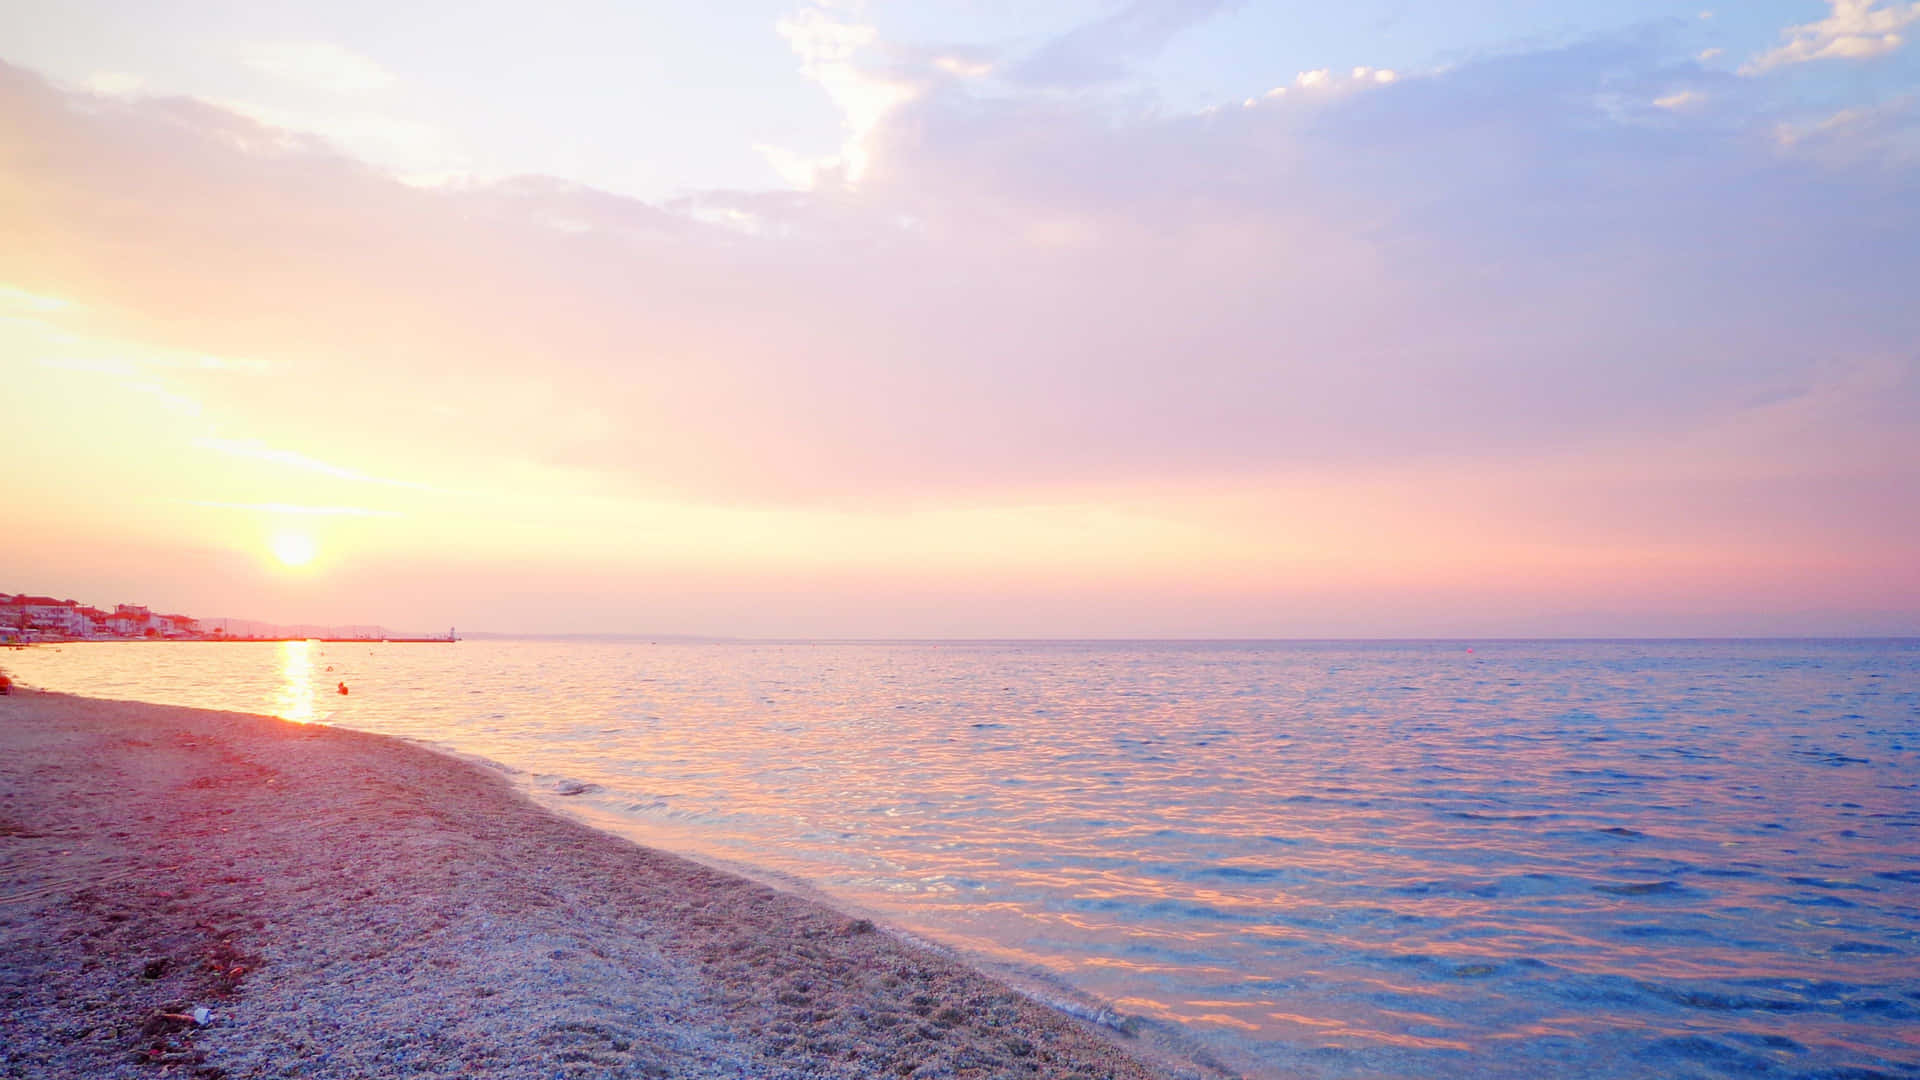 Unmomento Impresionante De La Puesta De Sol En La Playa. Fondo de pantalla